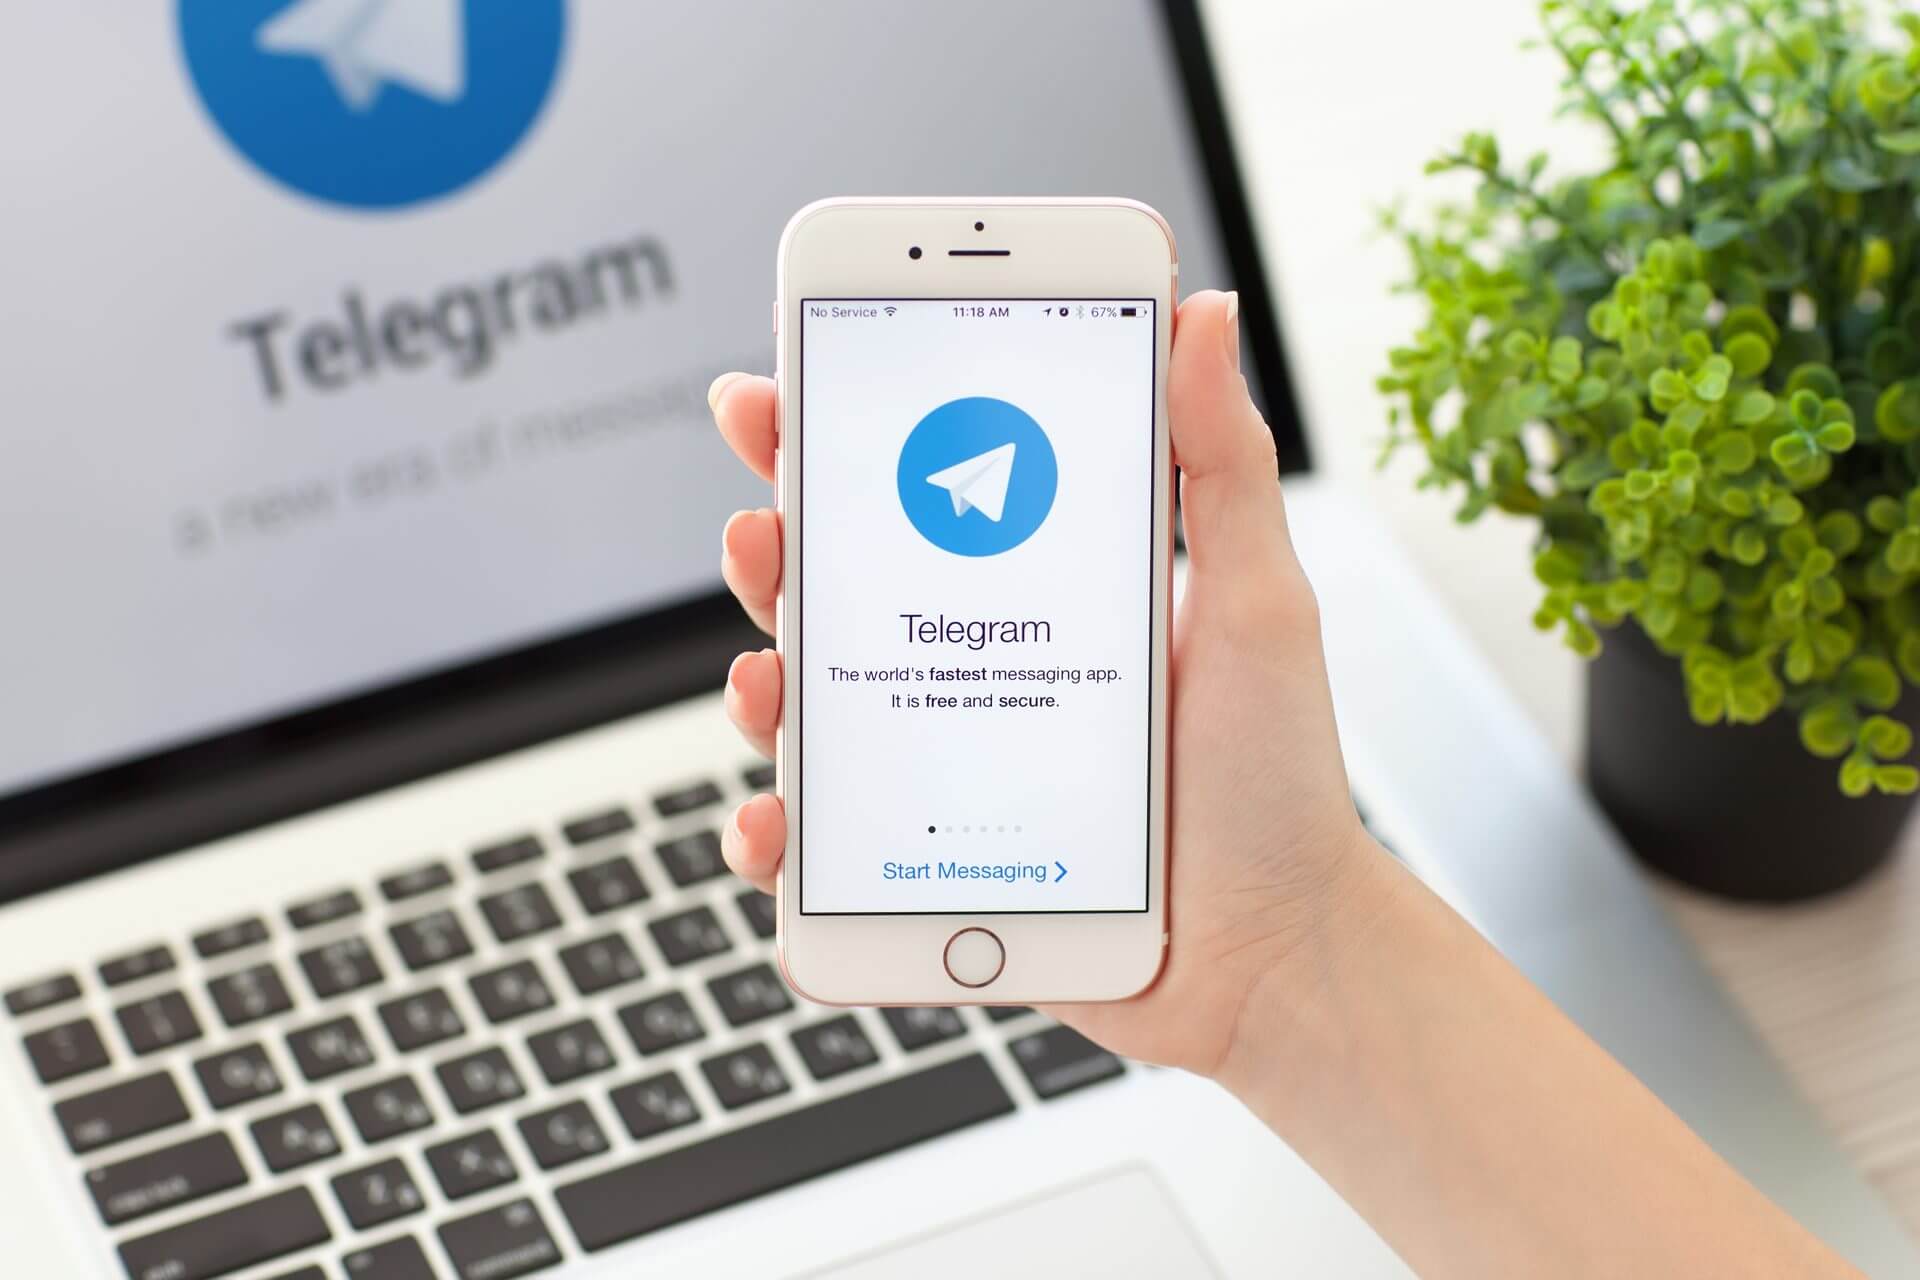 telegram browser